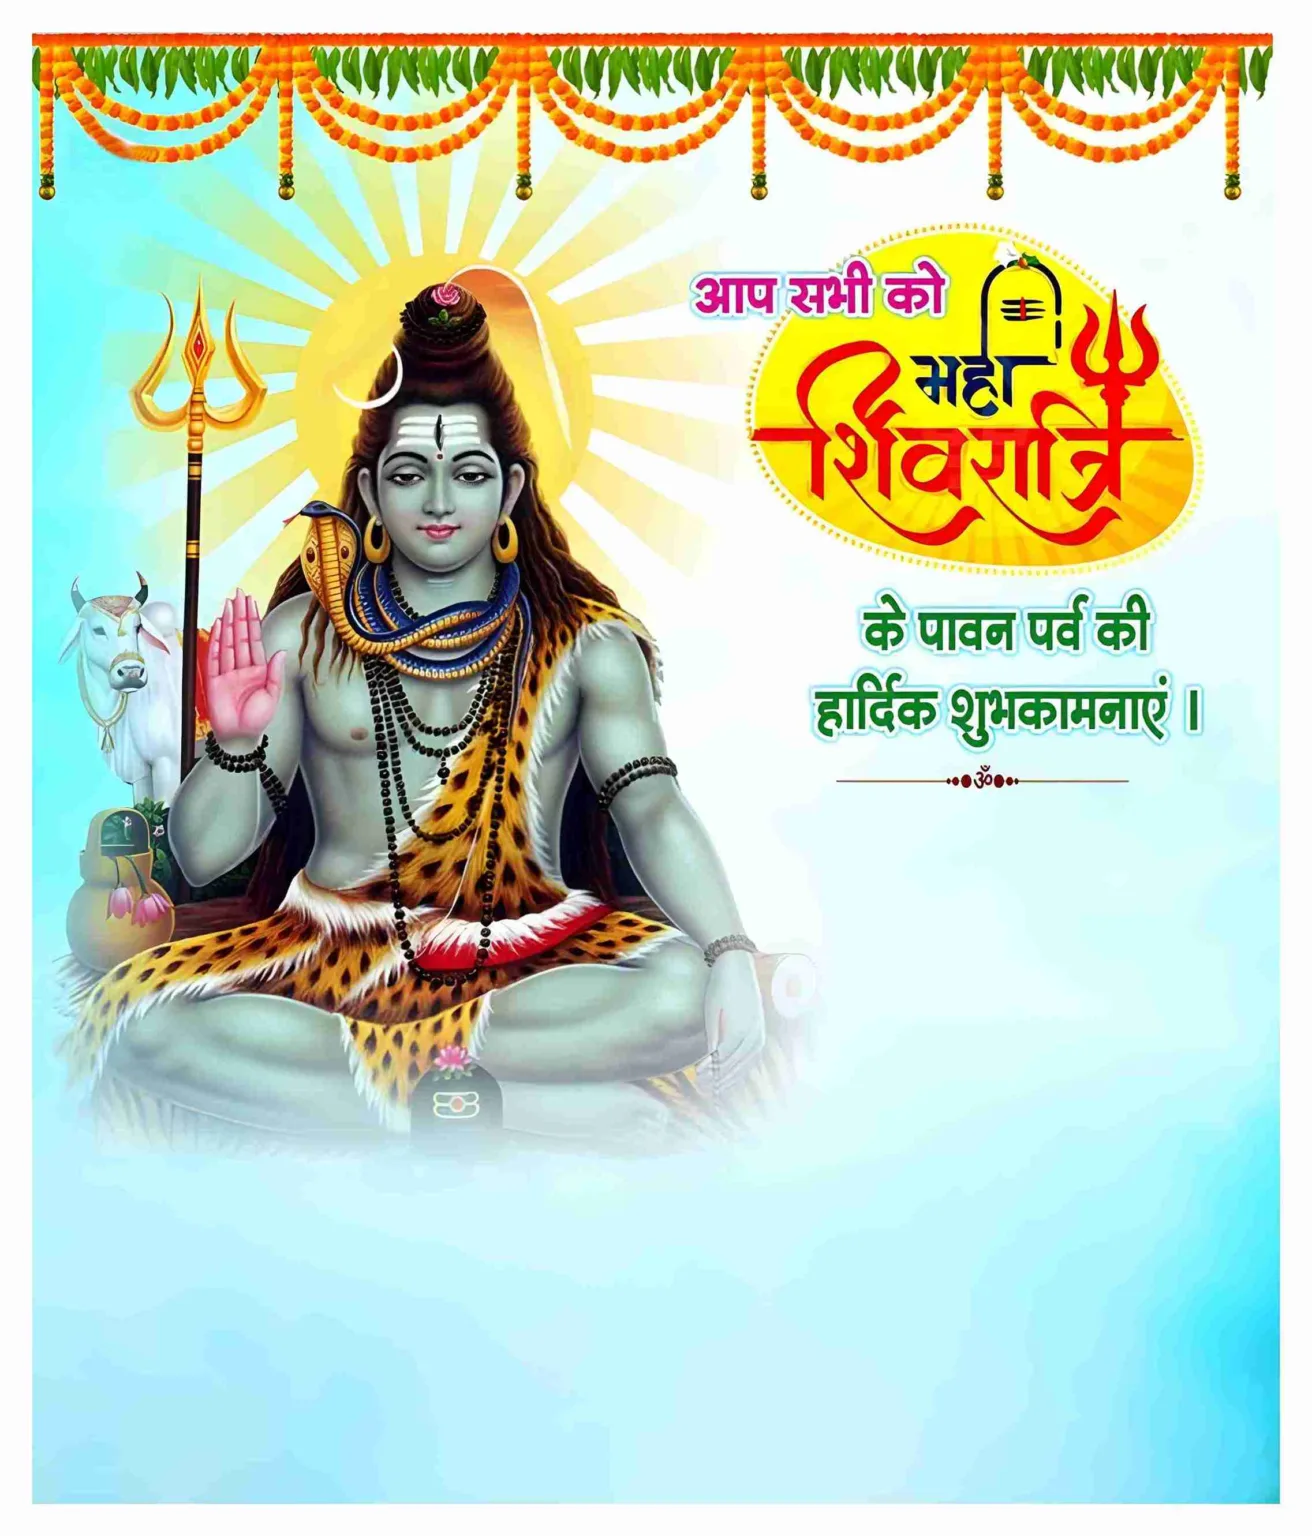 Maha Shivratri Ki Shubhkamnaye Poster